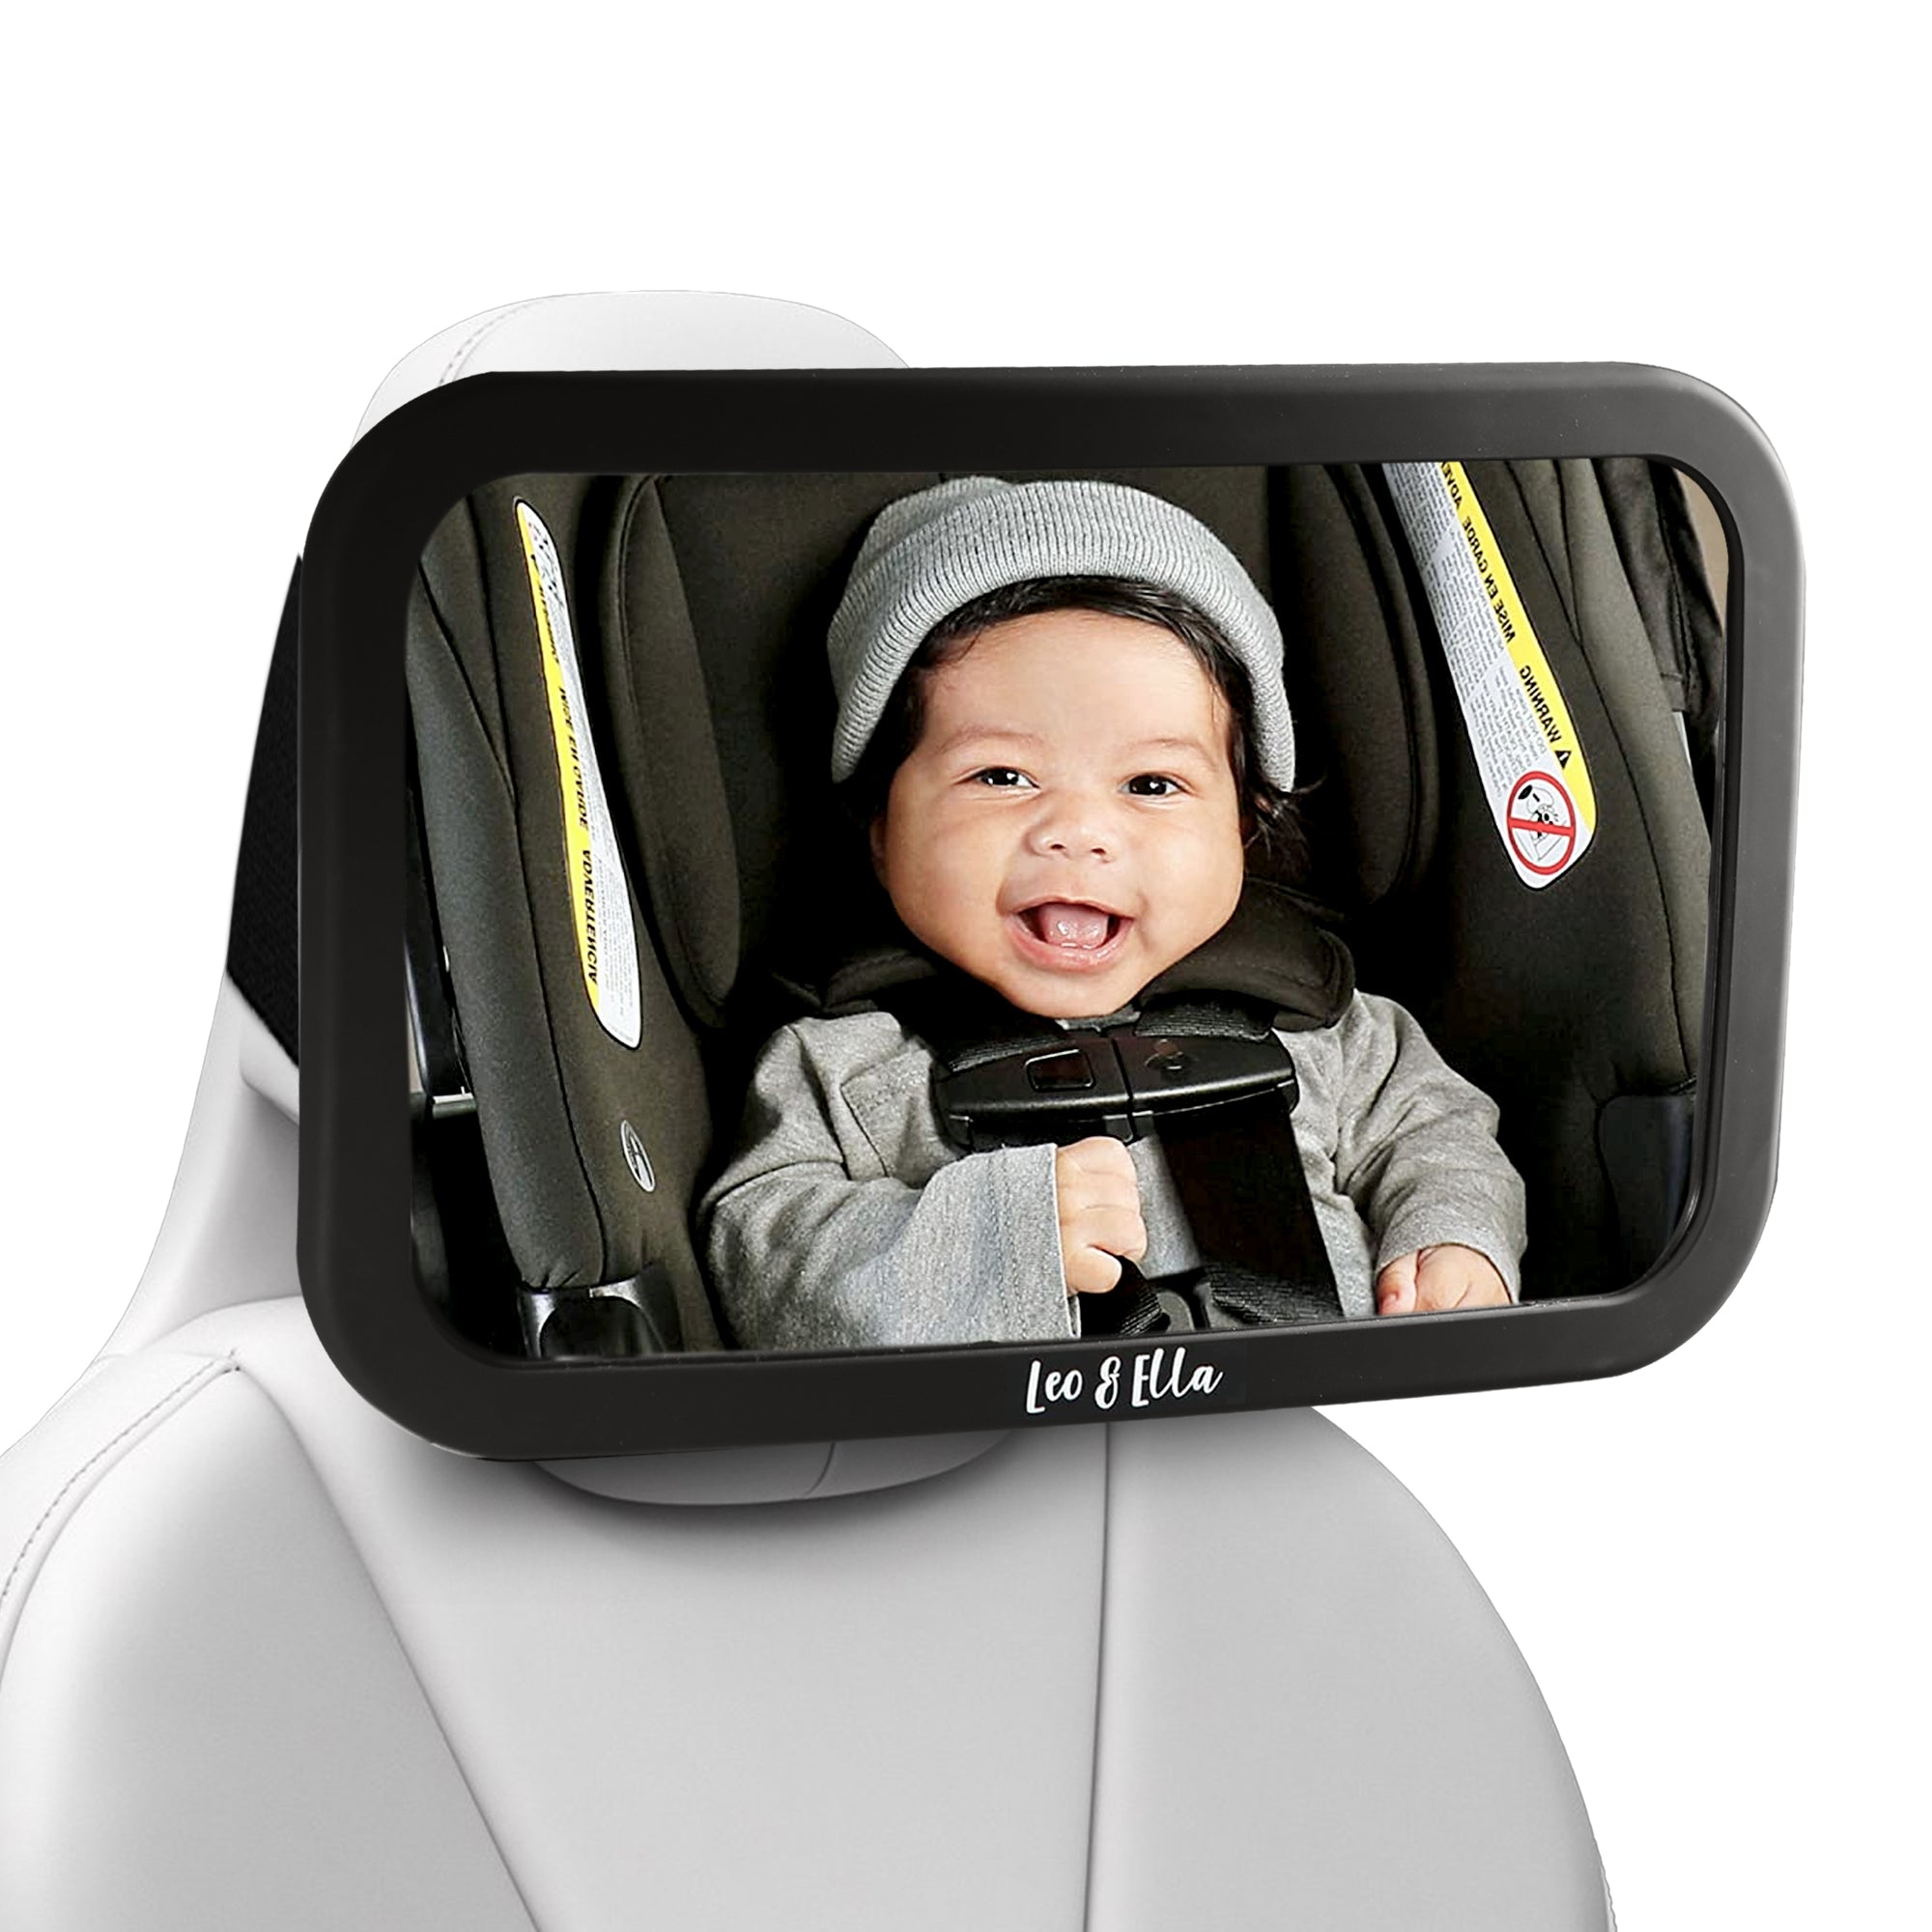 Adjustable Wide Rear View Car Mirror Auto Spiegel Baby Child Seat Car  Safety Mirror Monitor Headrest